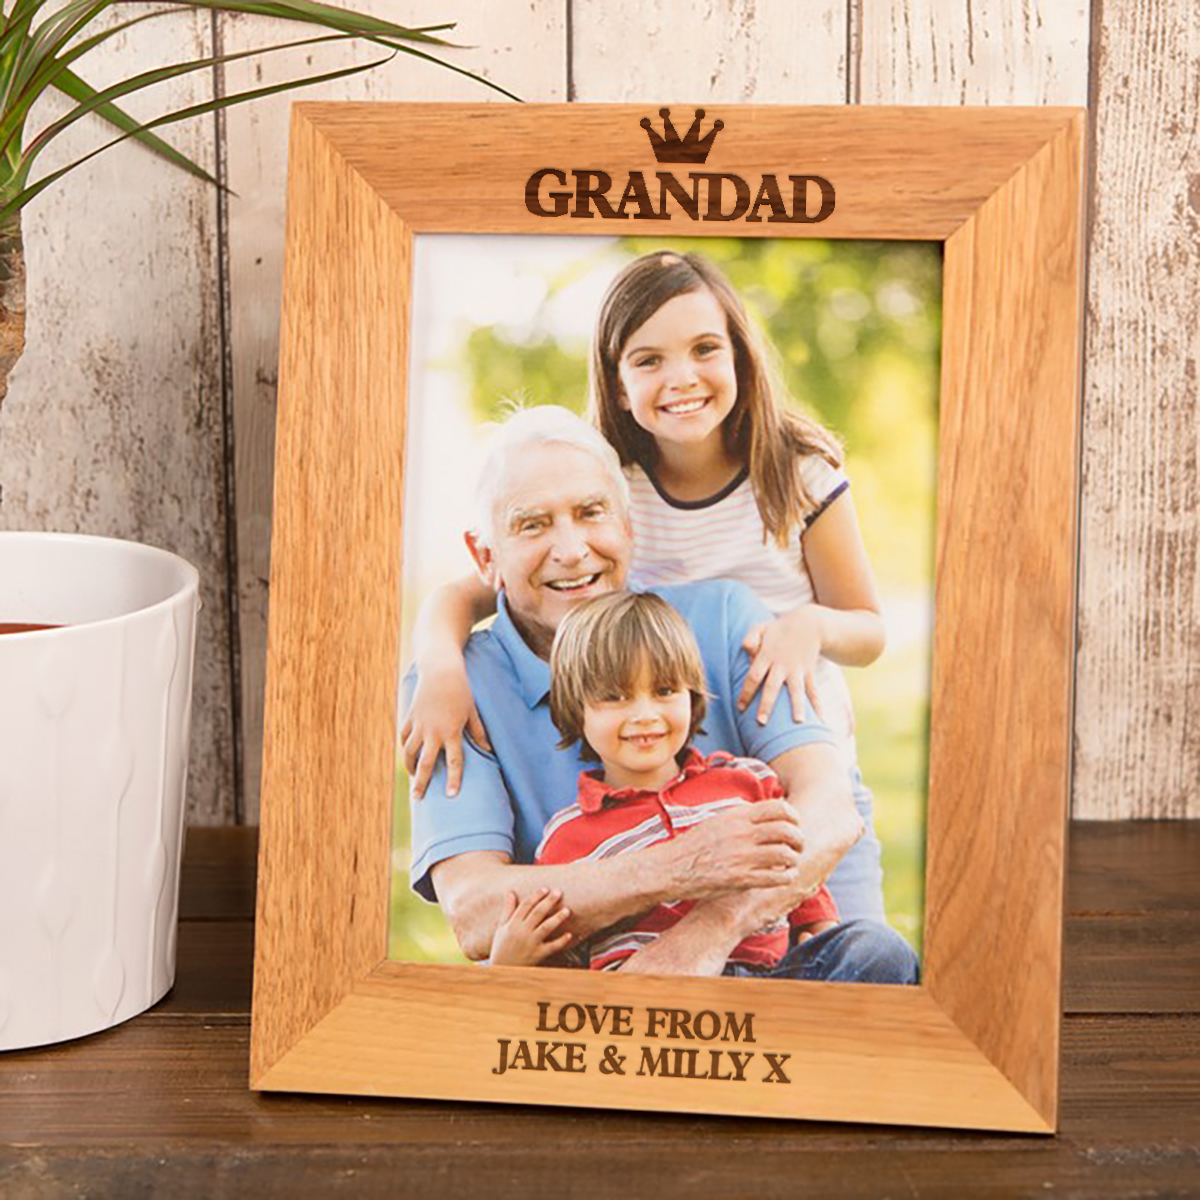 Personalised Wooden Photo Frame - Grandad Crown